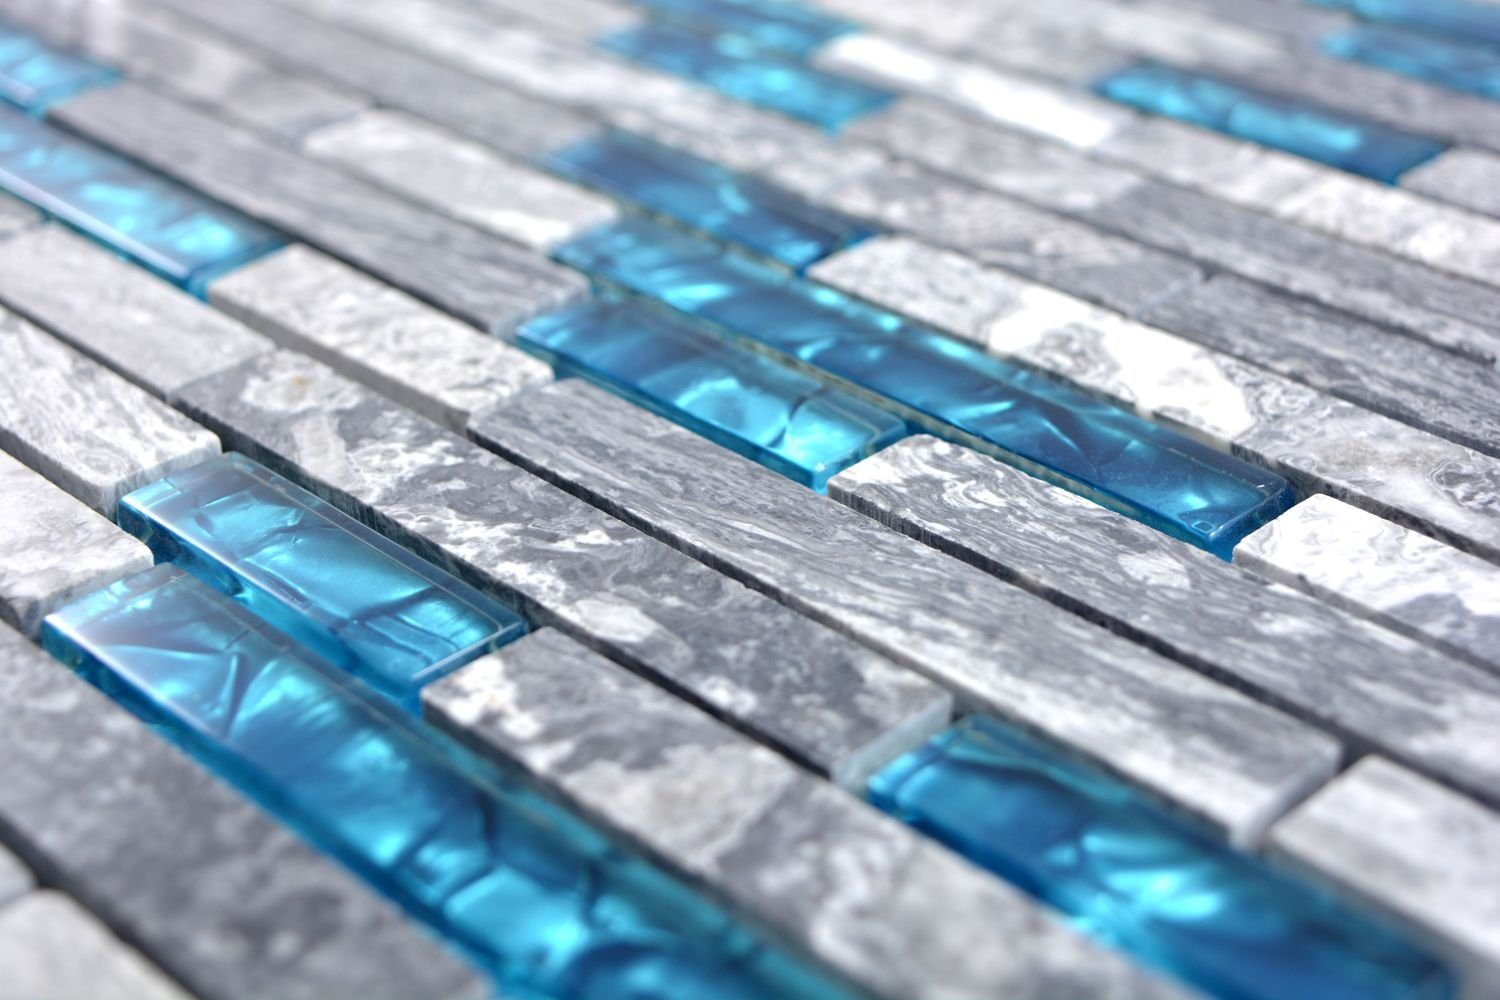 Mosaikfliesen Wandfliese 10-teillig, Glasmosik Fliesen Mosani Blau, Marmor 0,87m² Grau Naturstein Wandverkleidung Dekorative Set,